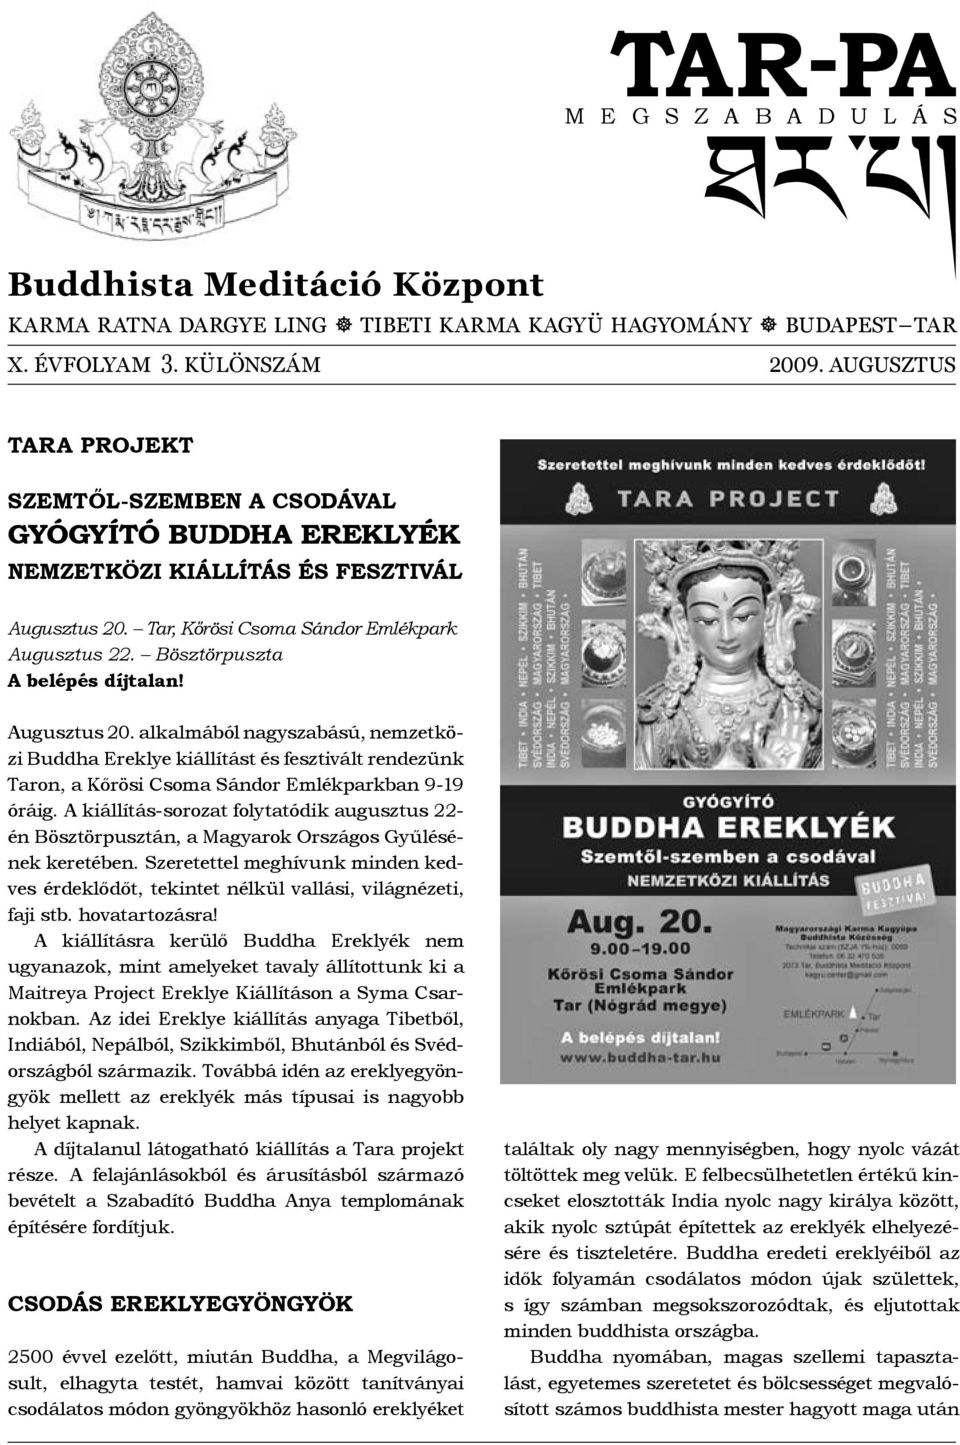 TAR-PA. Buddhista Meditáció Központ M E G S Z A B A D U L Á S  SZEMTŐL-SZEMBEN A CSODÁVAL GYÓGYÍTÓ BUDDHA EREKLYÉK NEMZETKÖZI KIÁLLÍTÁS ÉS  FESZTIVÁL - PDF Ingyenes letöltés